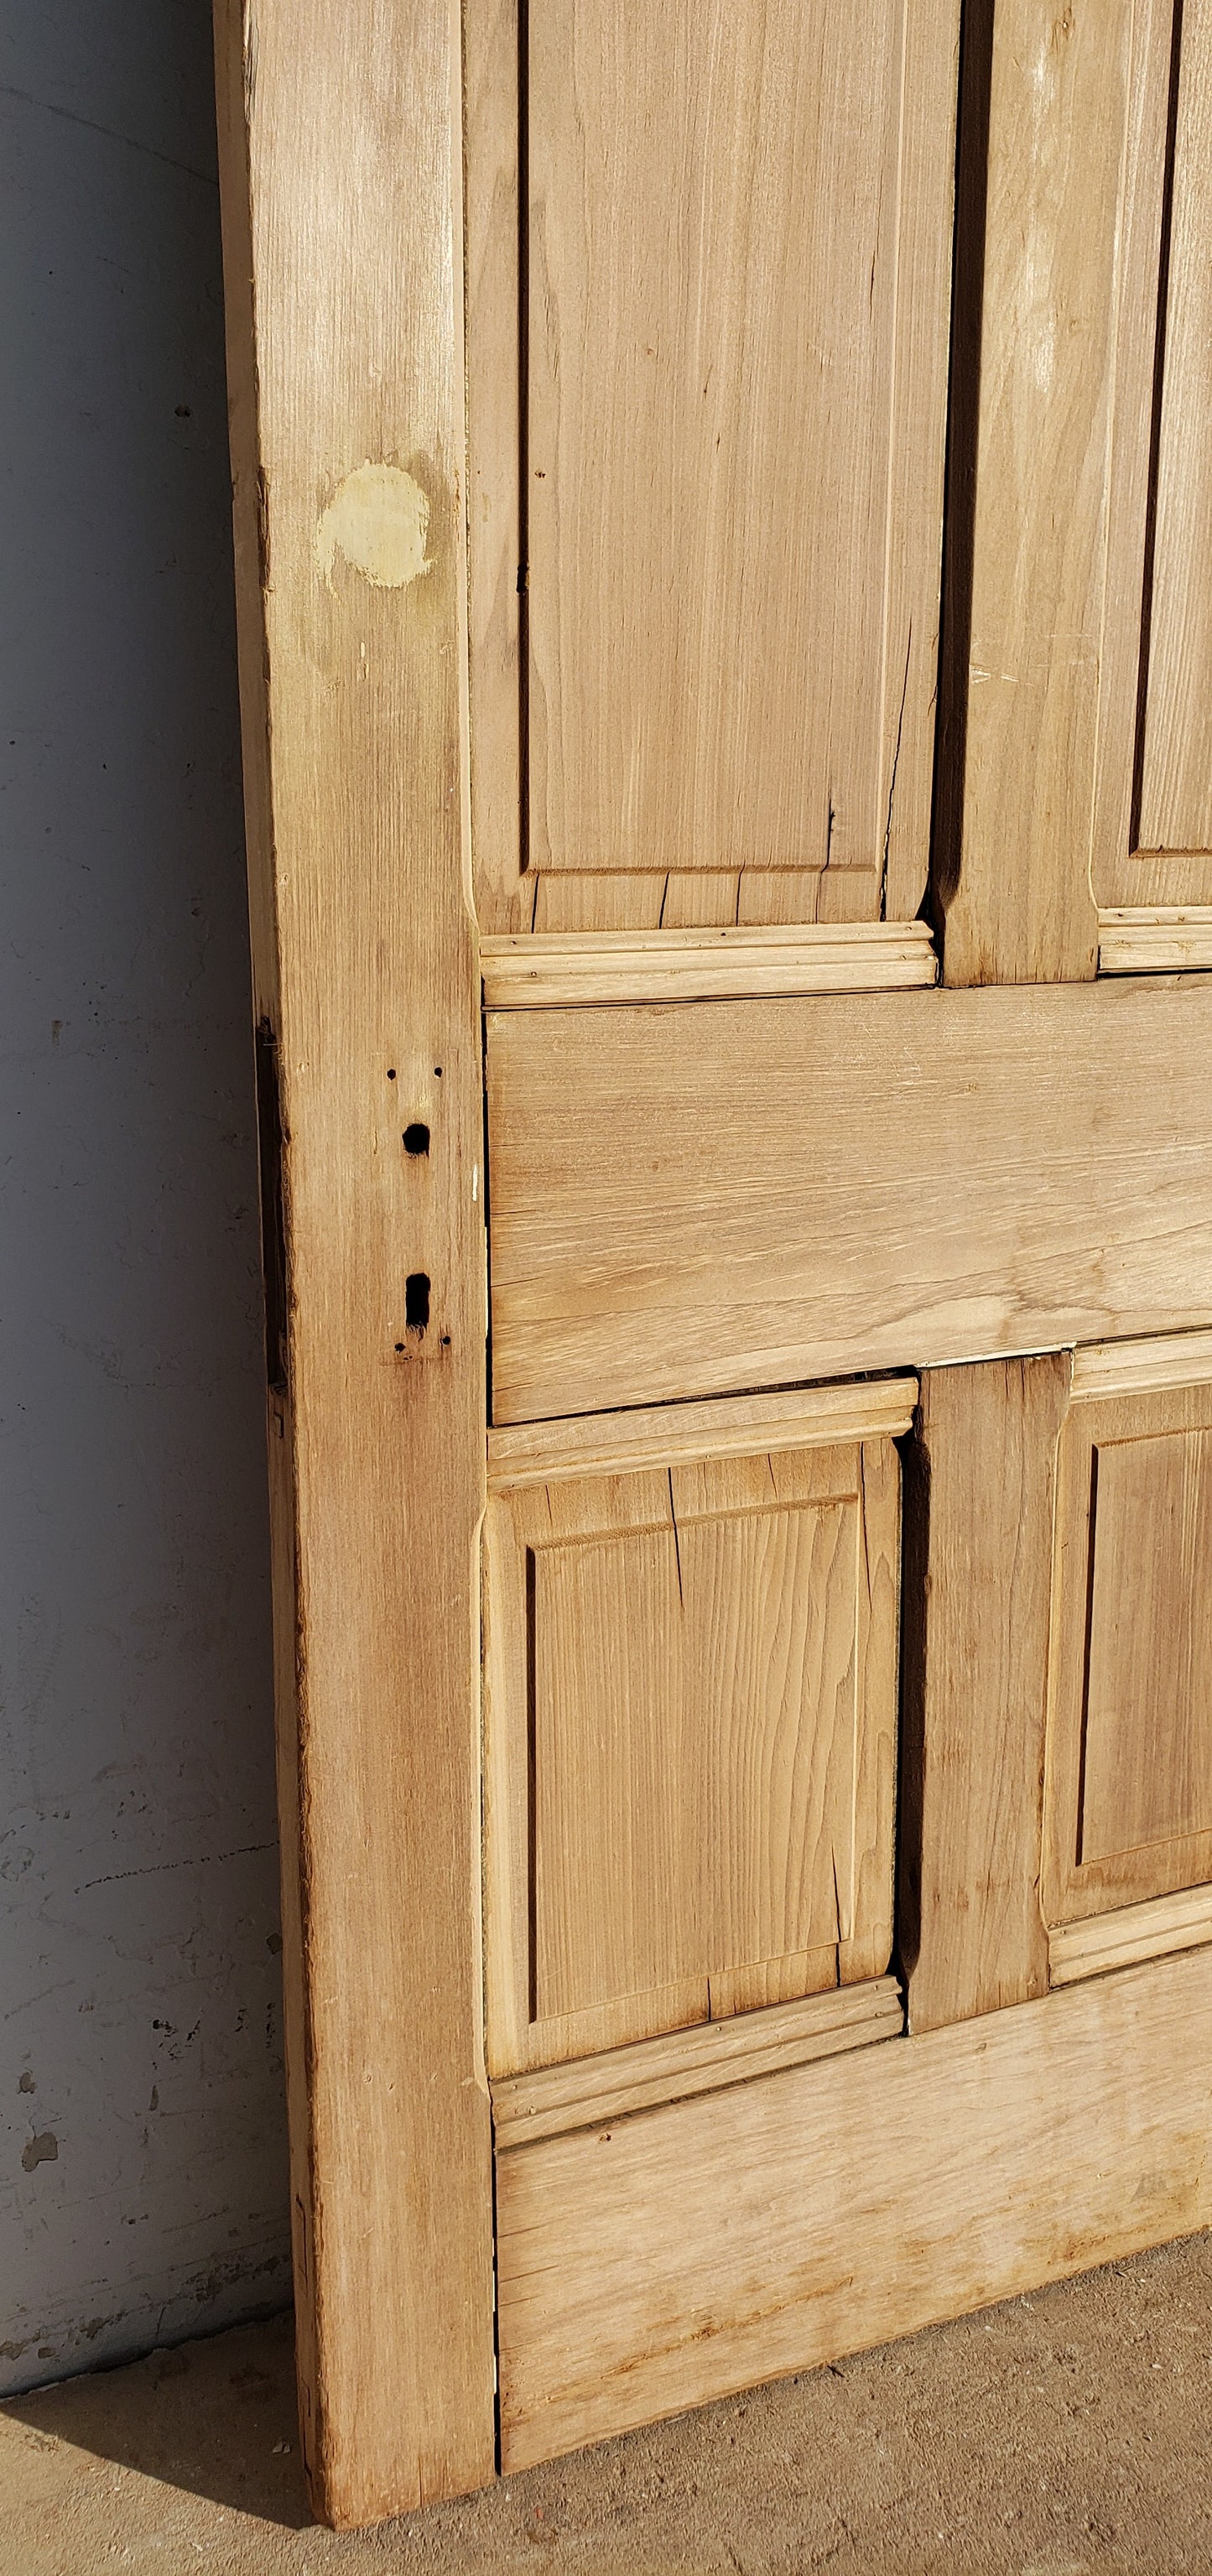 Antique 4 Panel Single Wood Door